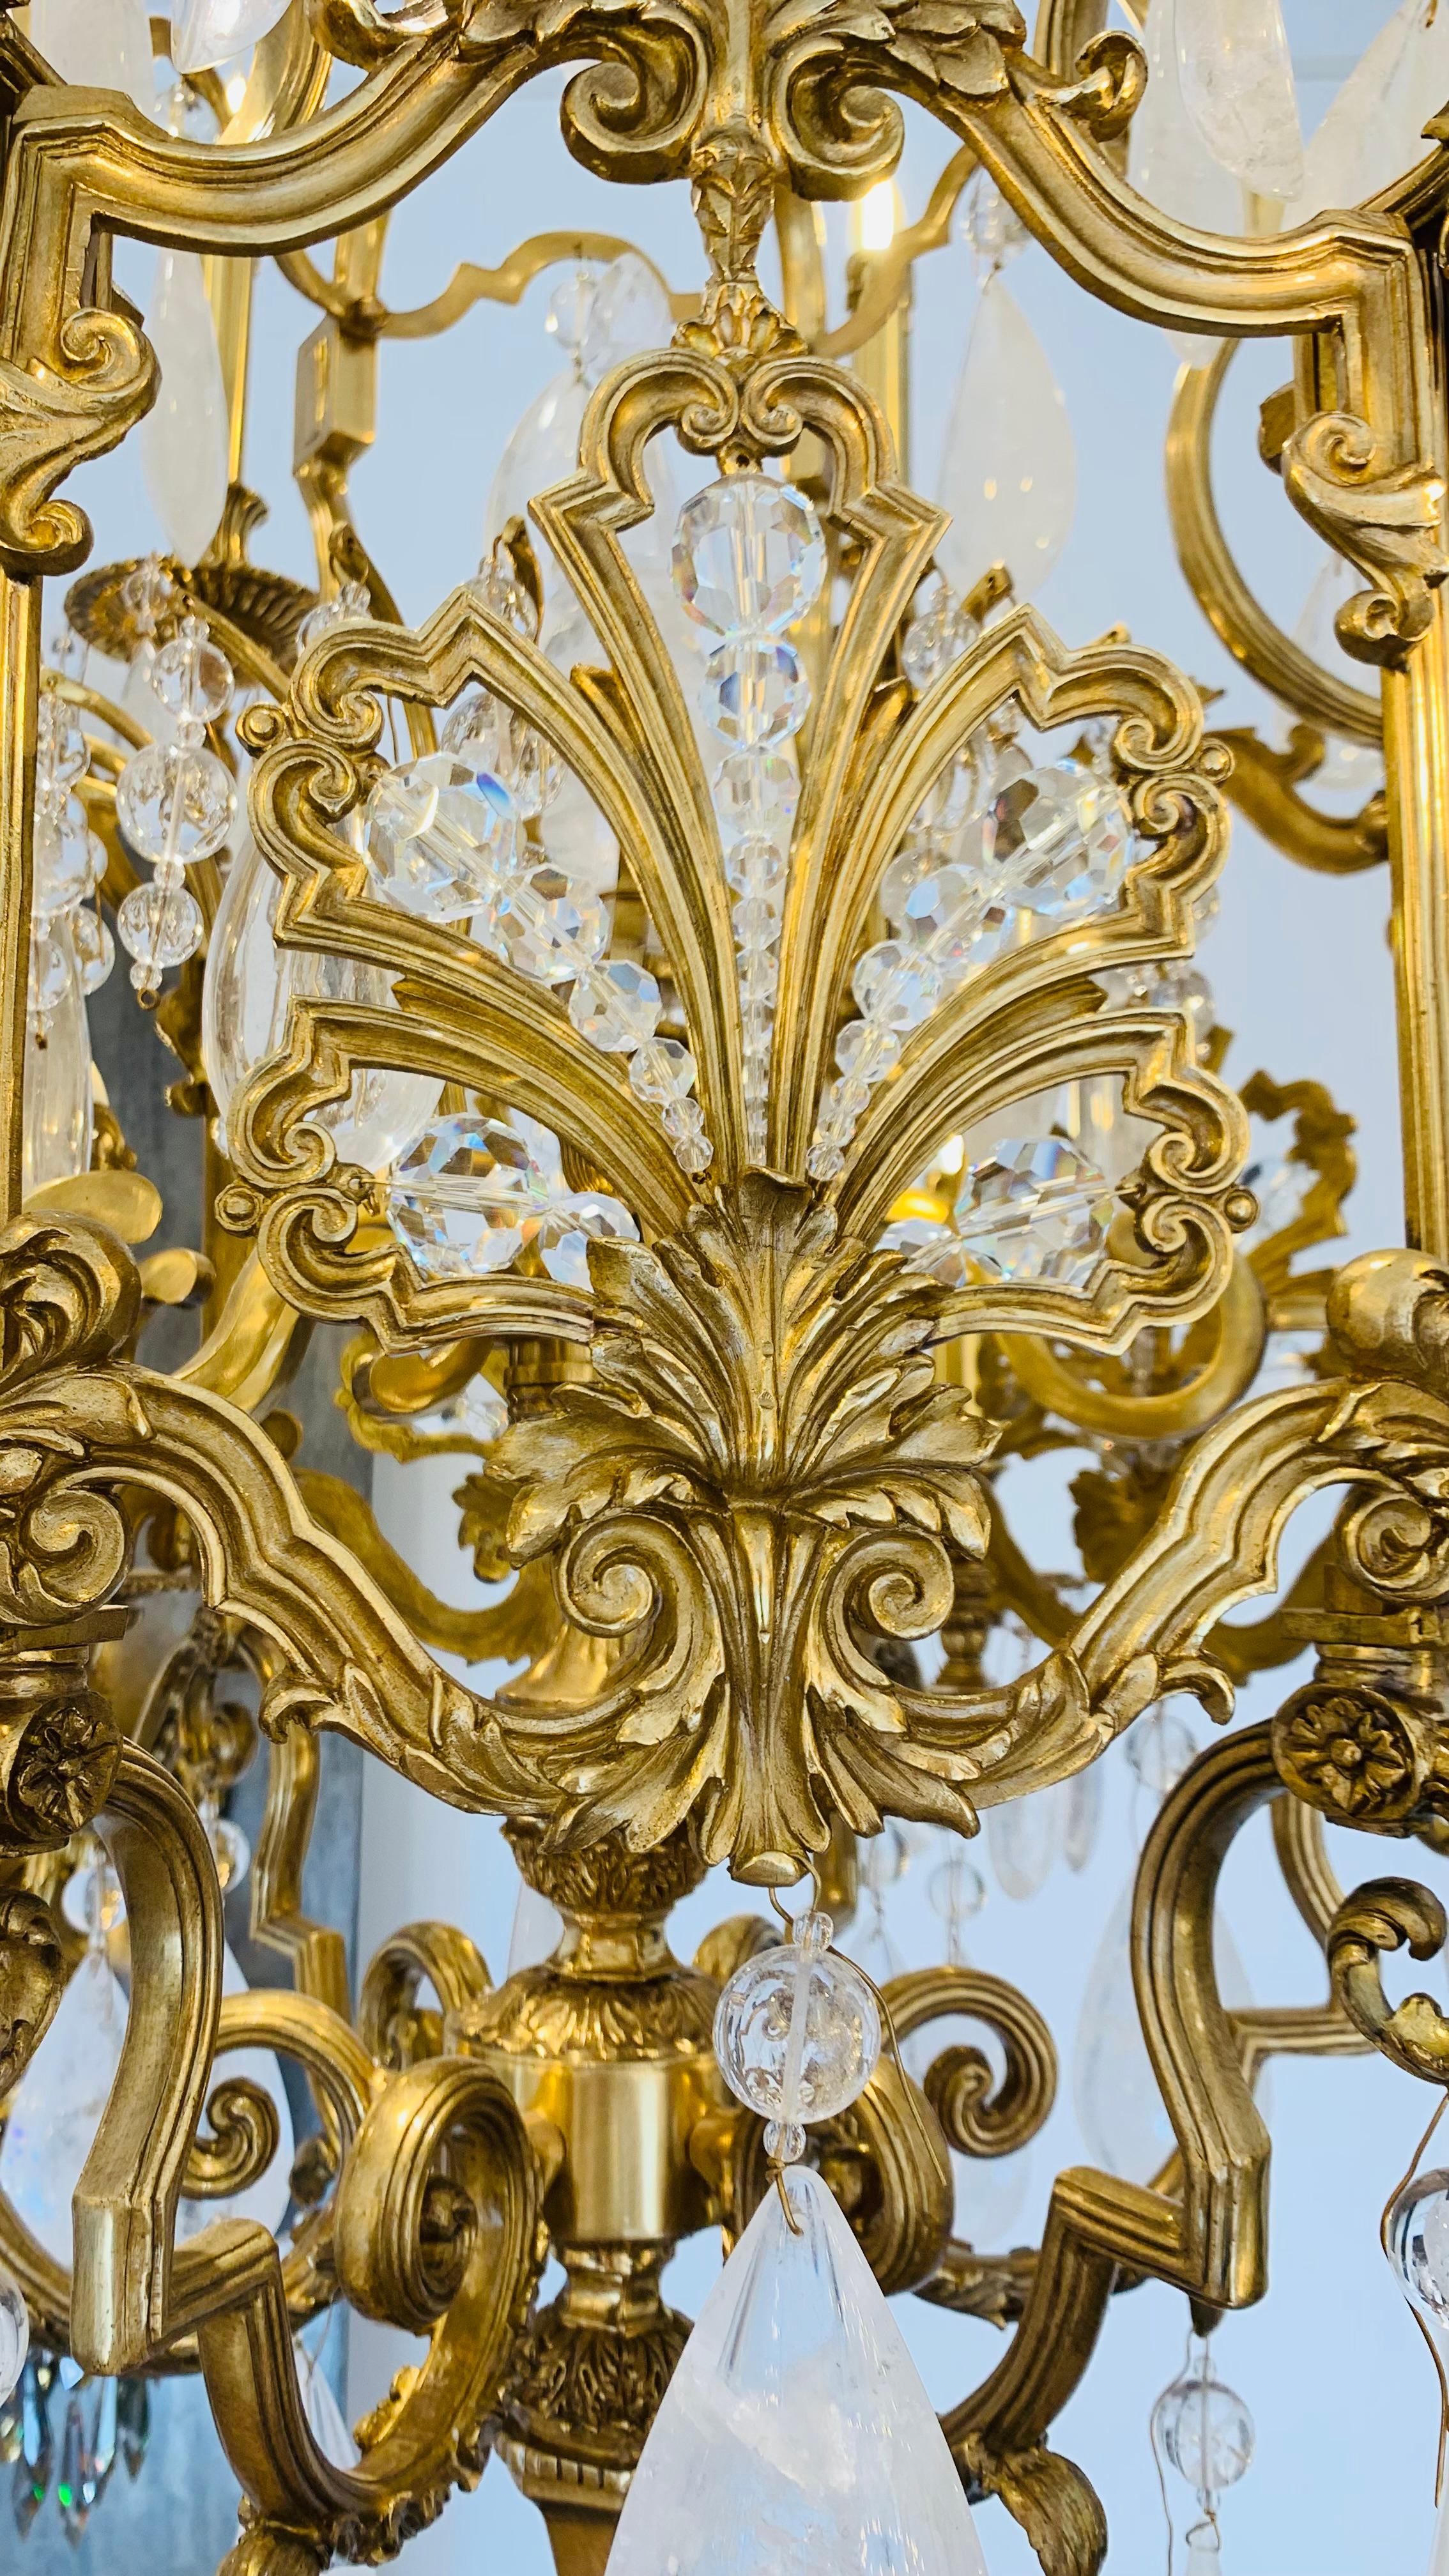 Diese sechseckige Laterne in Bronze, von bewegter Form, ist charakteristisch für den Stil Louis XIV, der durch die Majestät und den Reichtum gekennzeichnet ist.
Majestätische Laterne mit 12 Lichterarmen und einem Schaft, der reich mit Bogen und